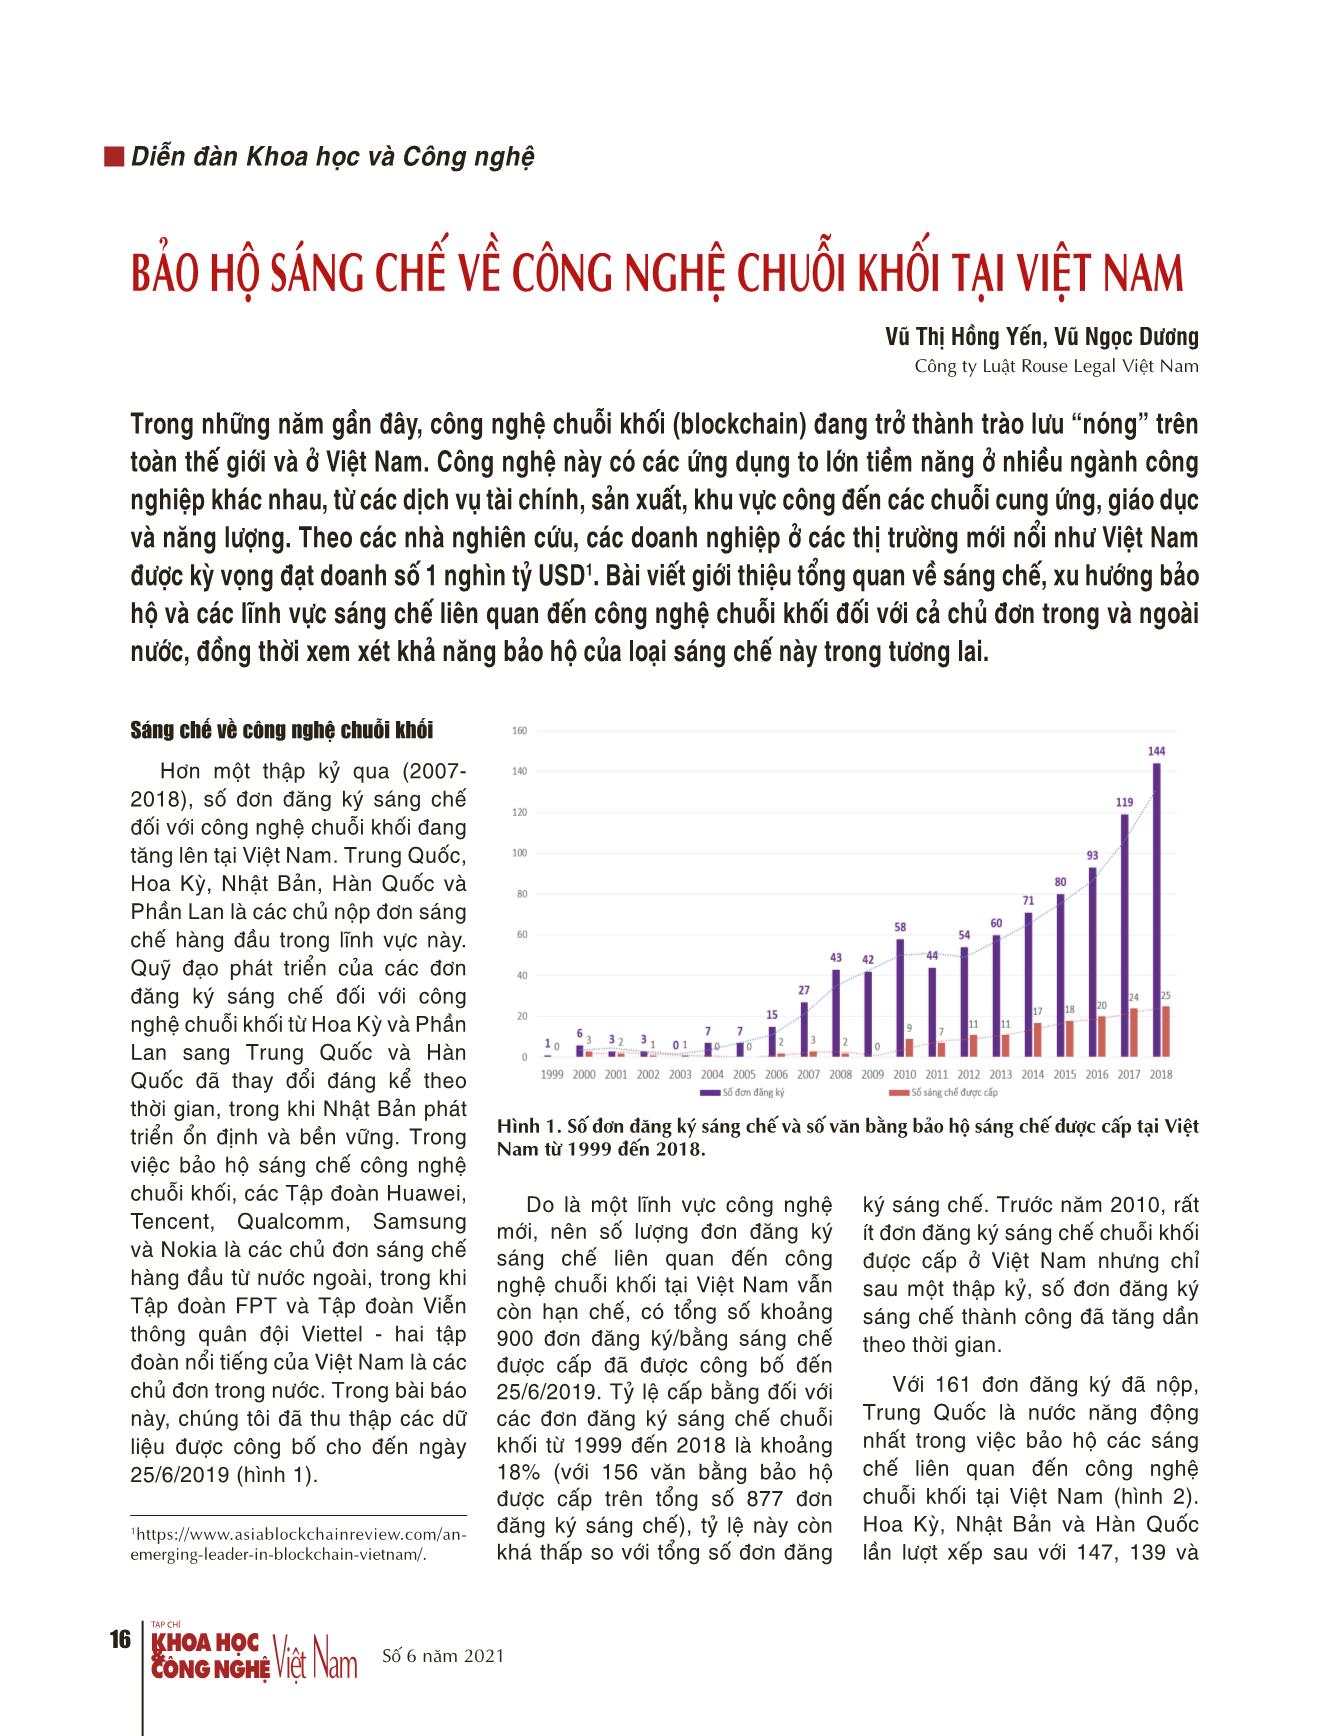 Bảo hộ sáng chế về công nghệ chuỗi khối tại Việt Nam trang 1